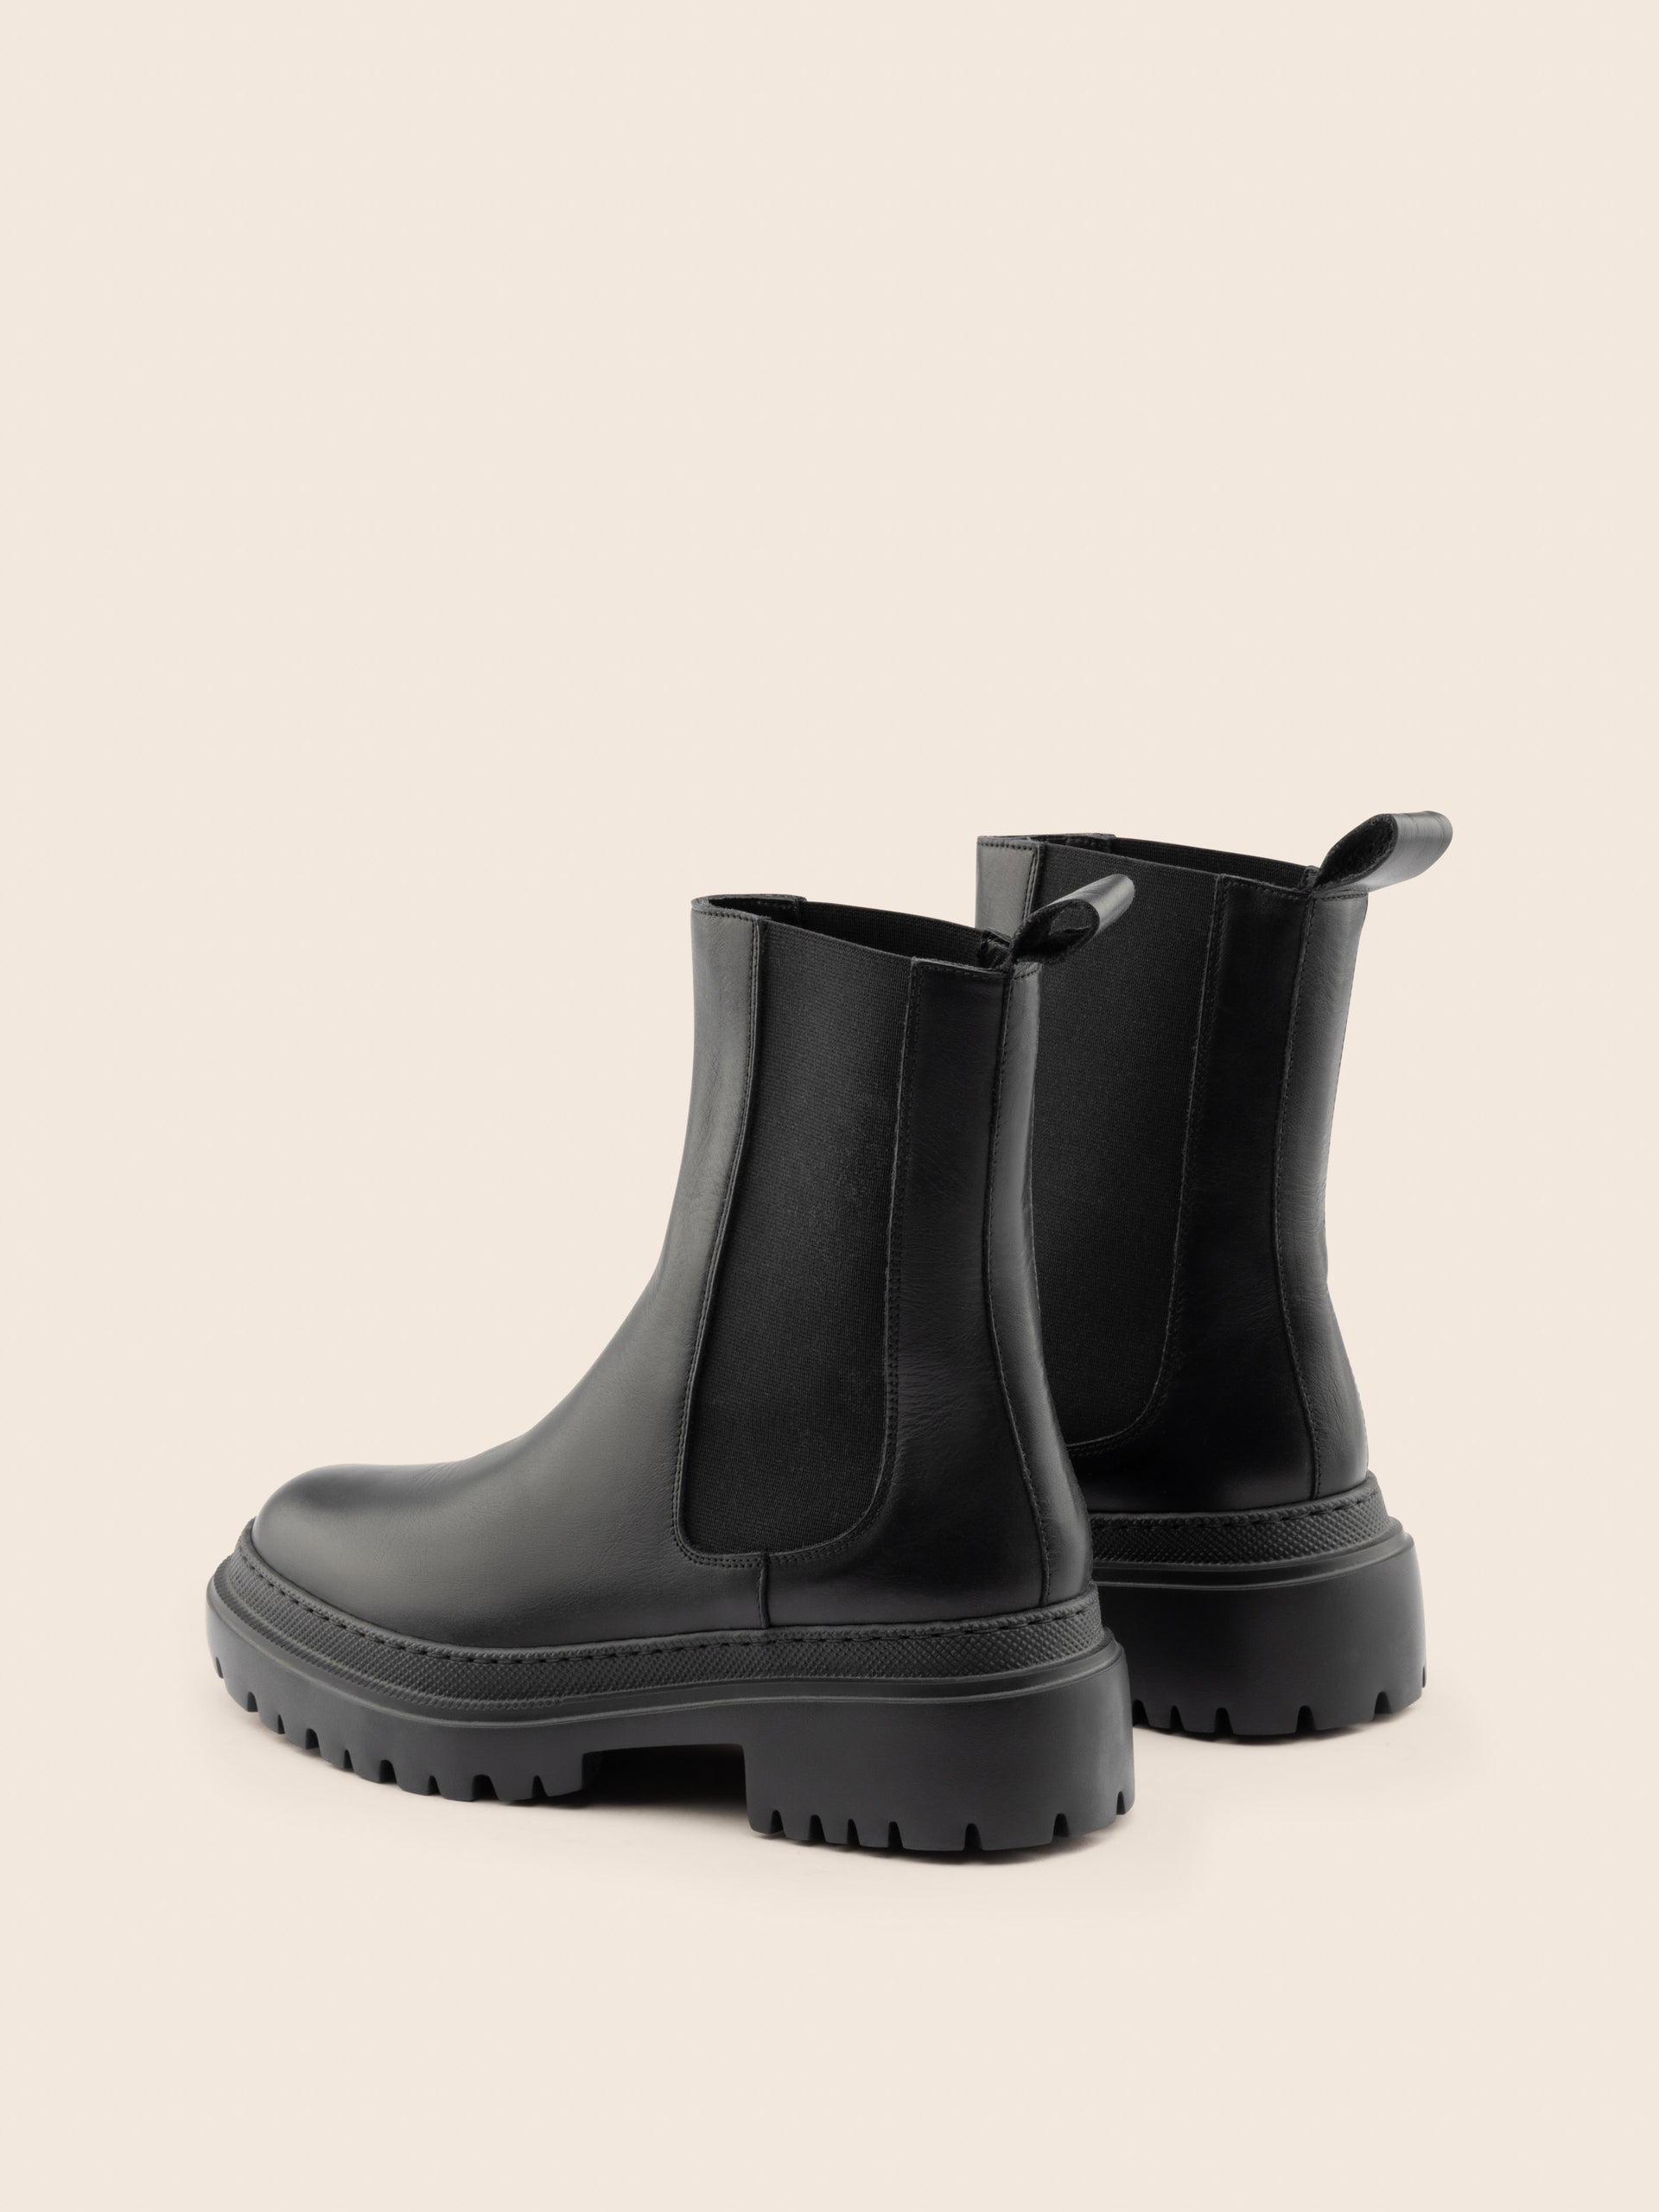 Corticella Black Leather Boot